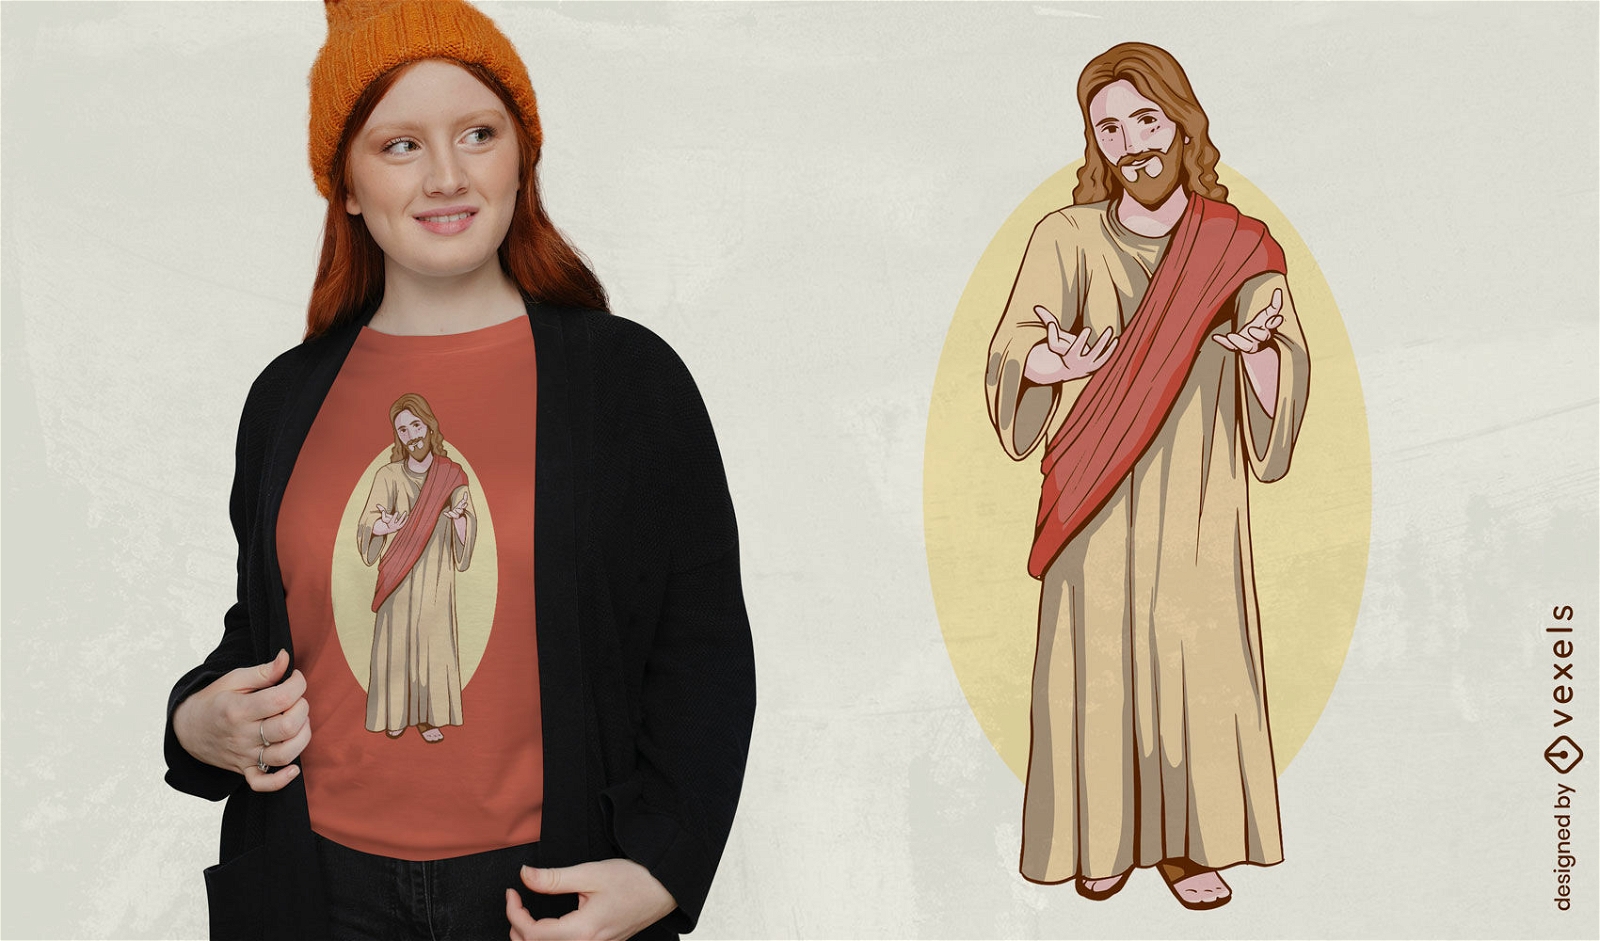 Jesus begr??t T-Shirt-Design